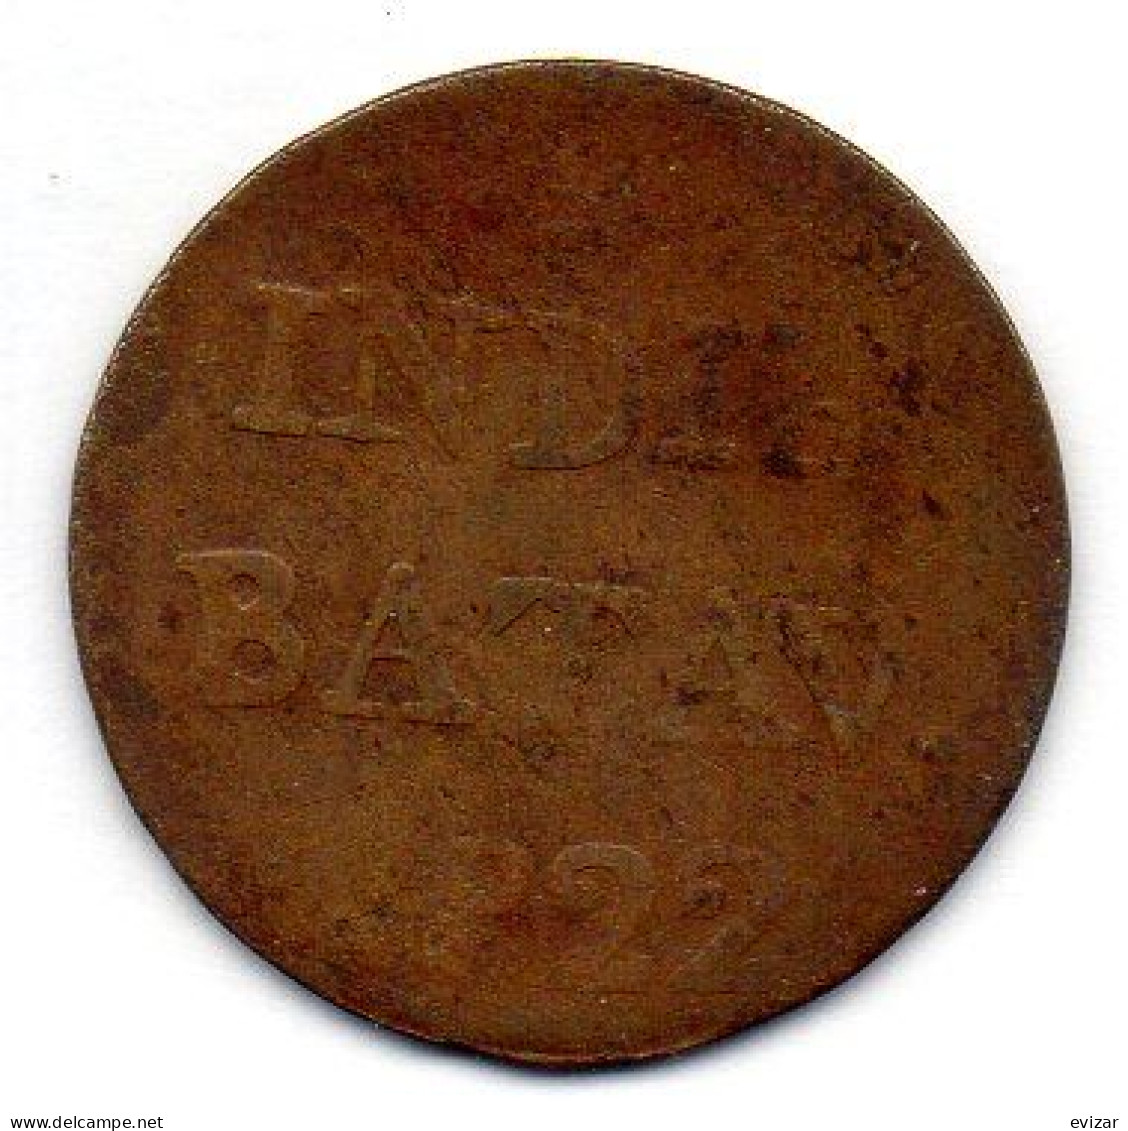 NETHERLAND INDONESIA - SUMATRA, 1/2 Stuiver, Copper, Year 1822, KM # 284.2 - Indonesia